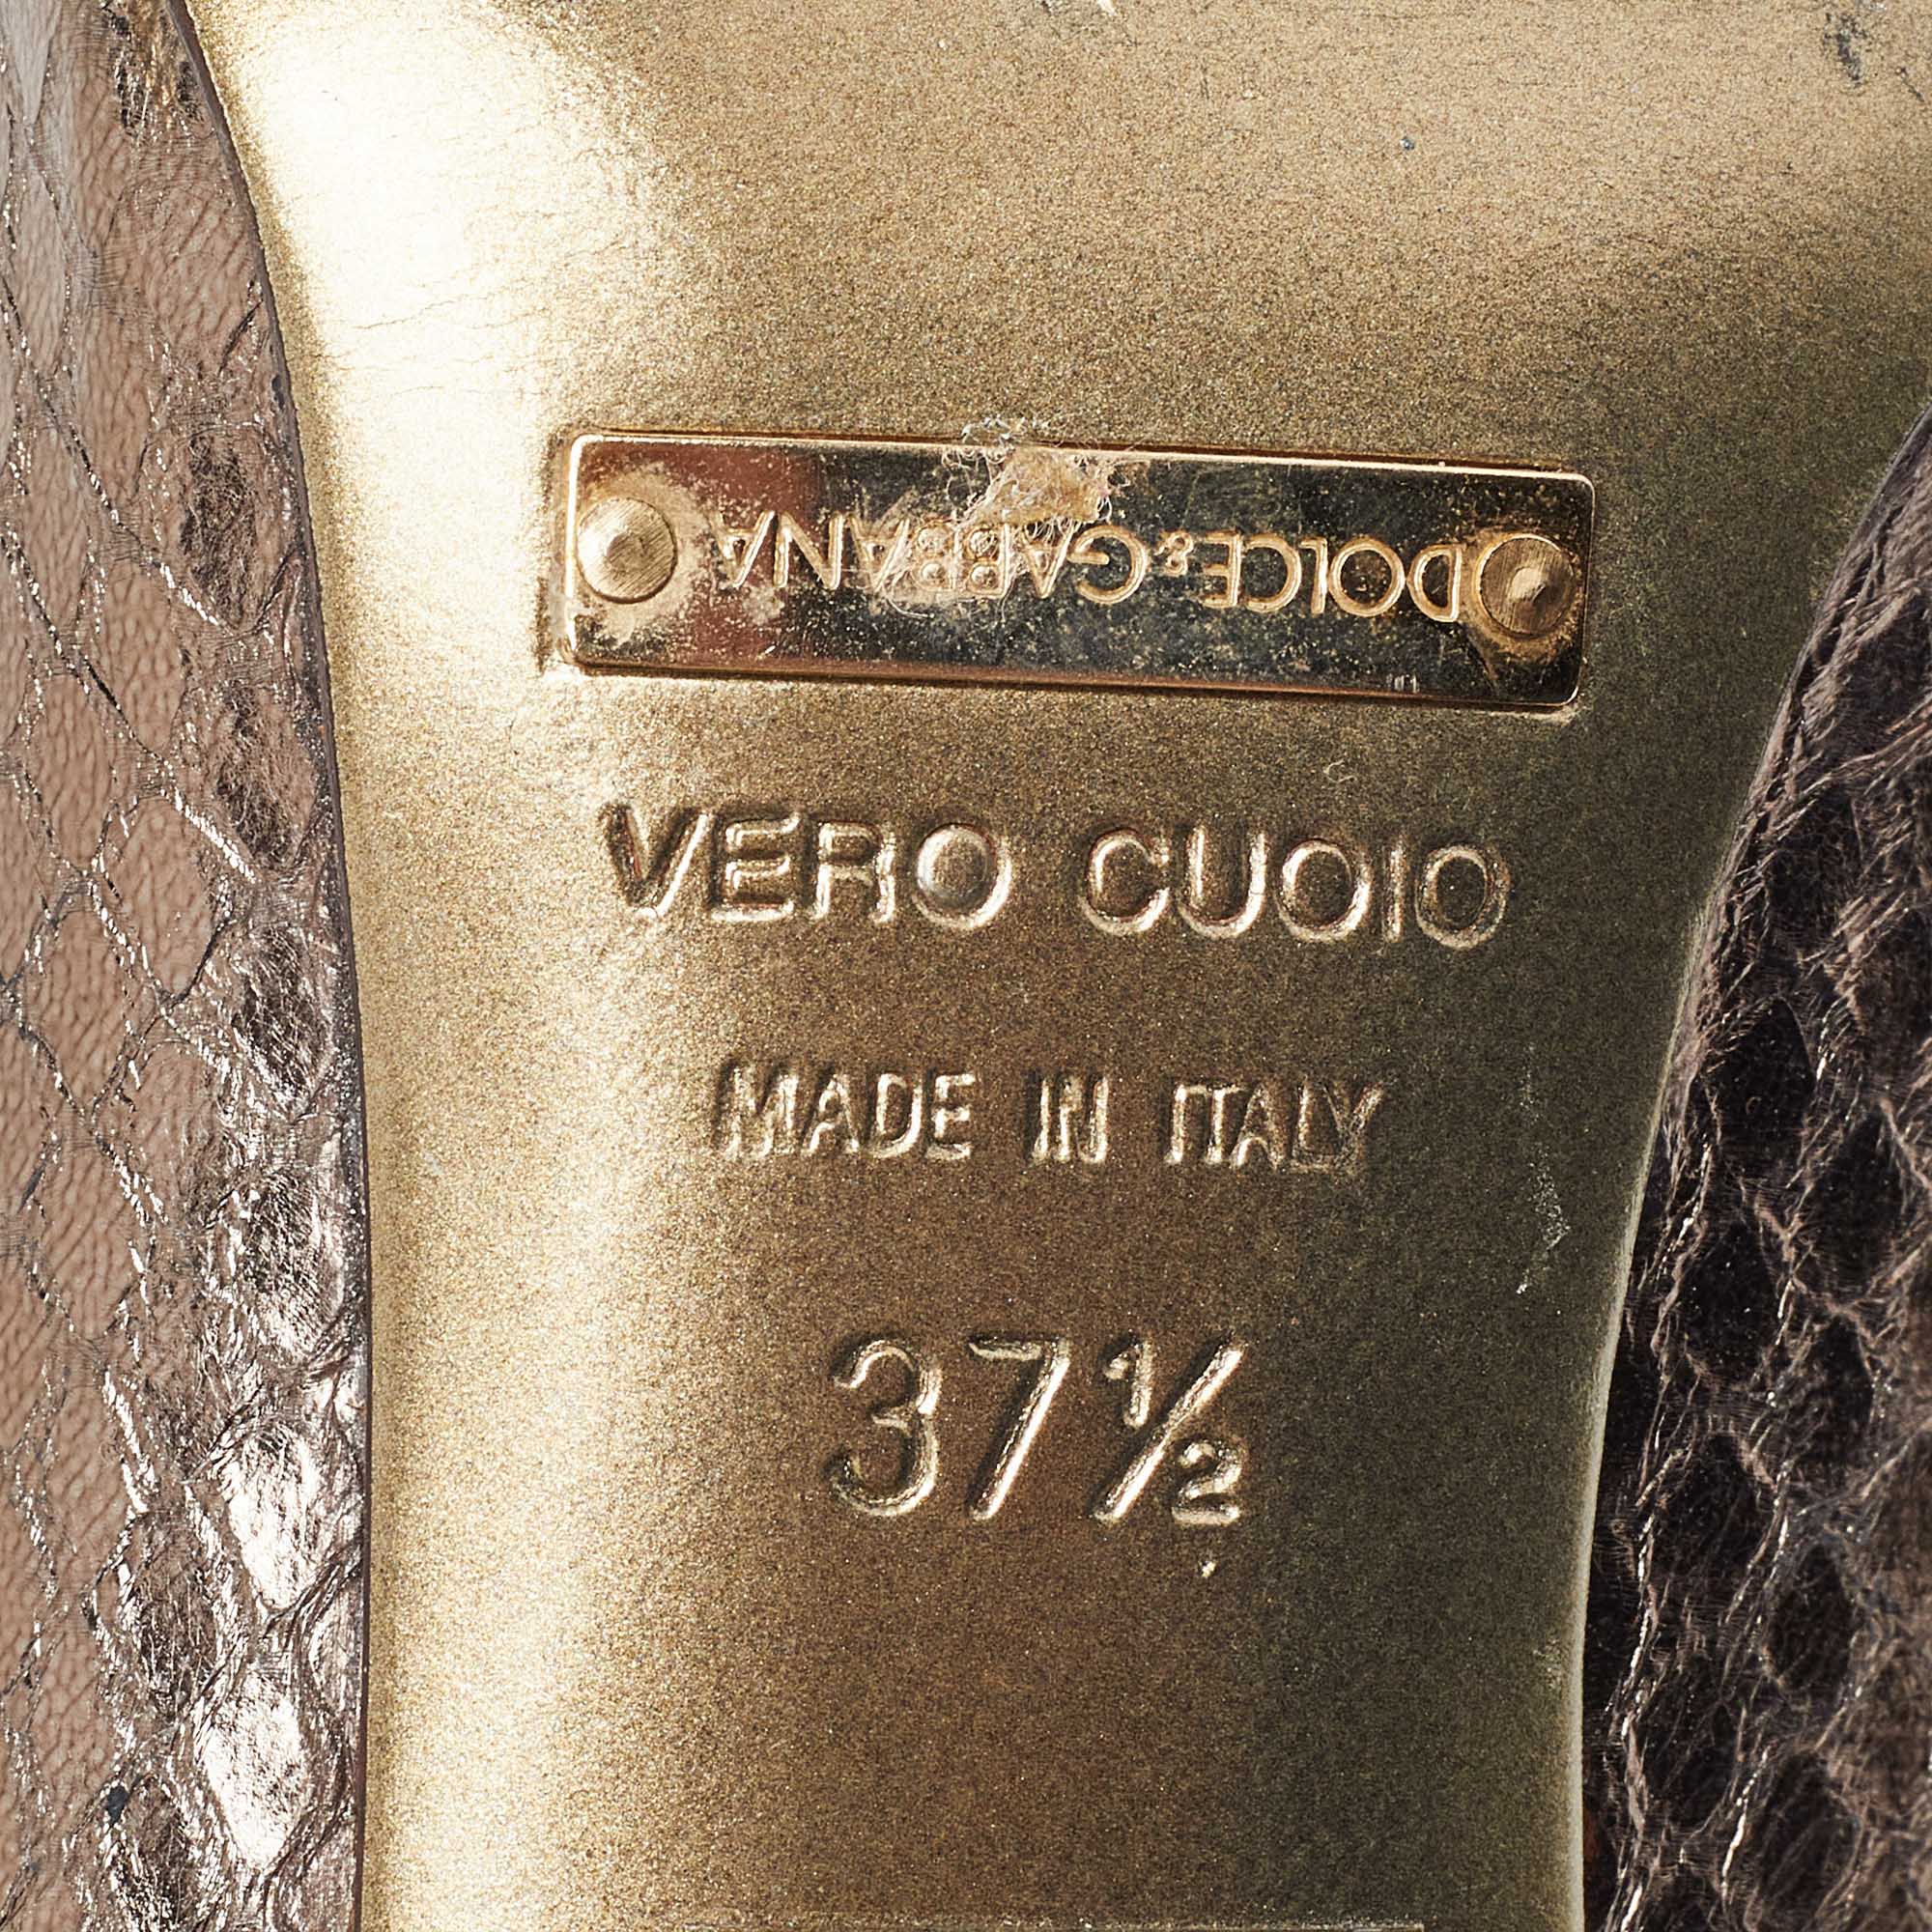 Dolce & Gabbana Metallic Embossed Snakeskin Open Toe Pumps Size 37.5